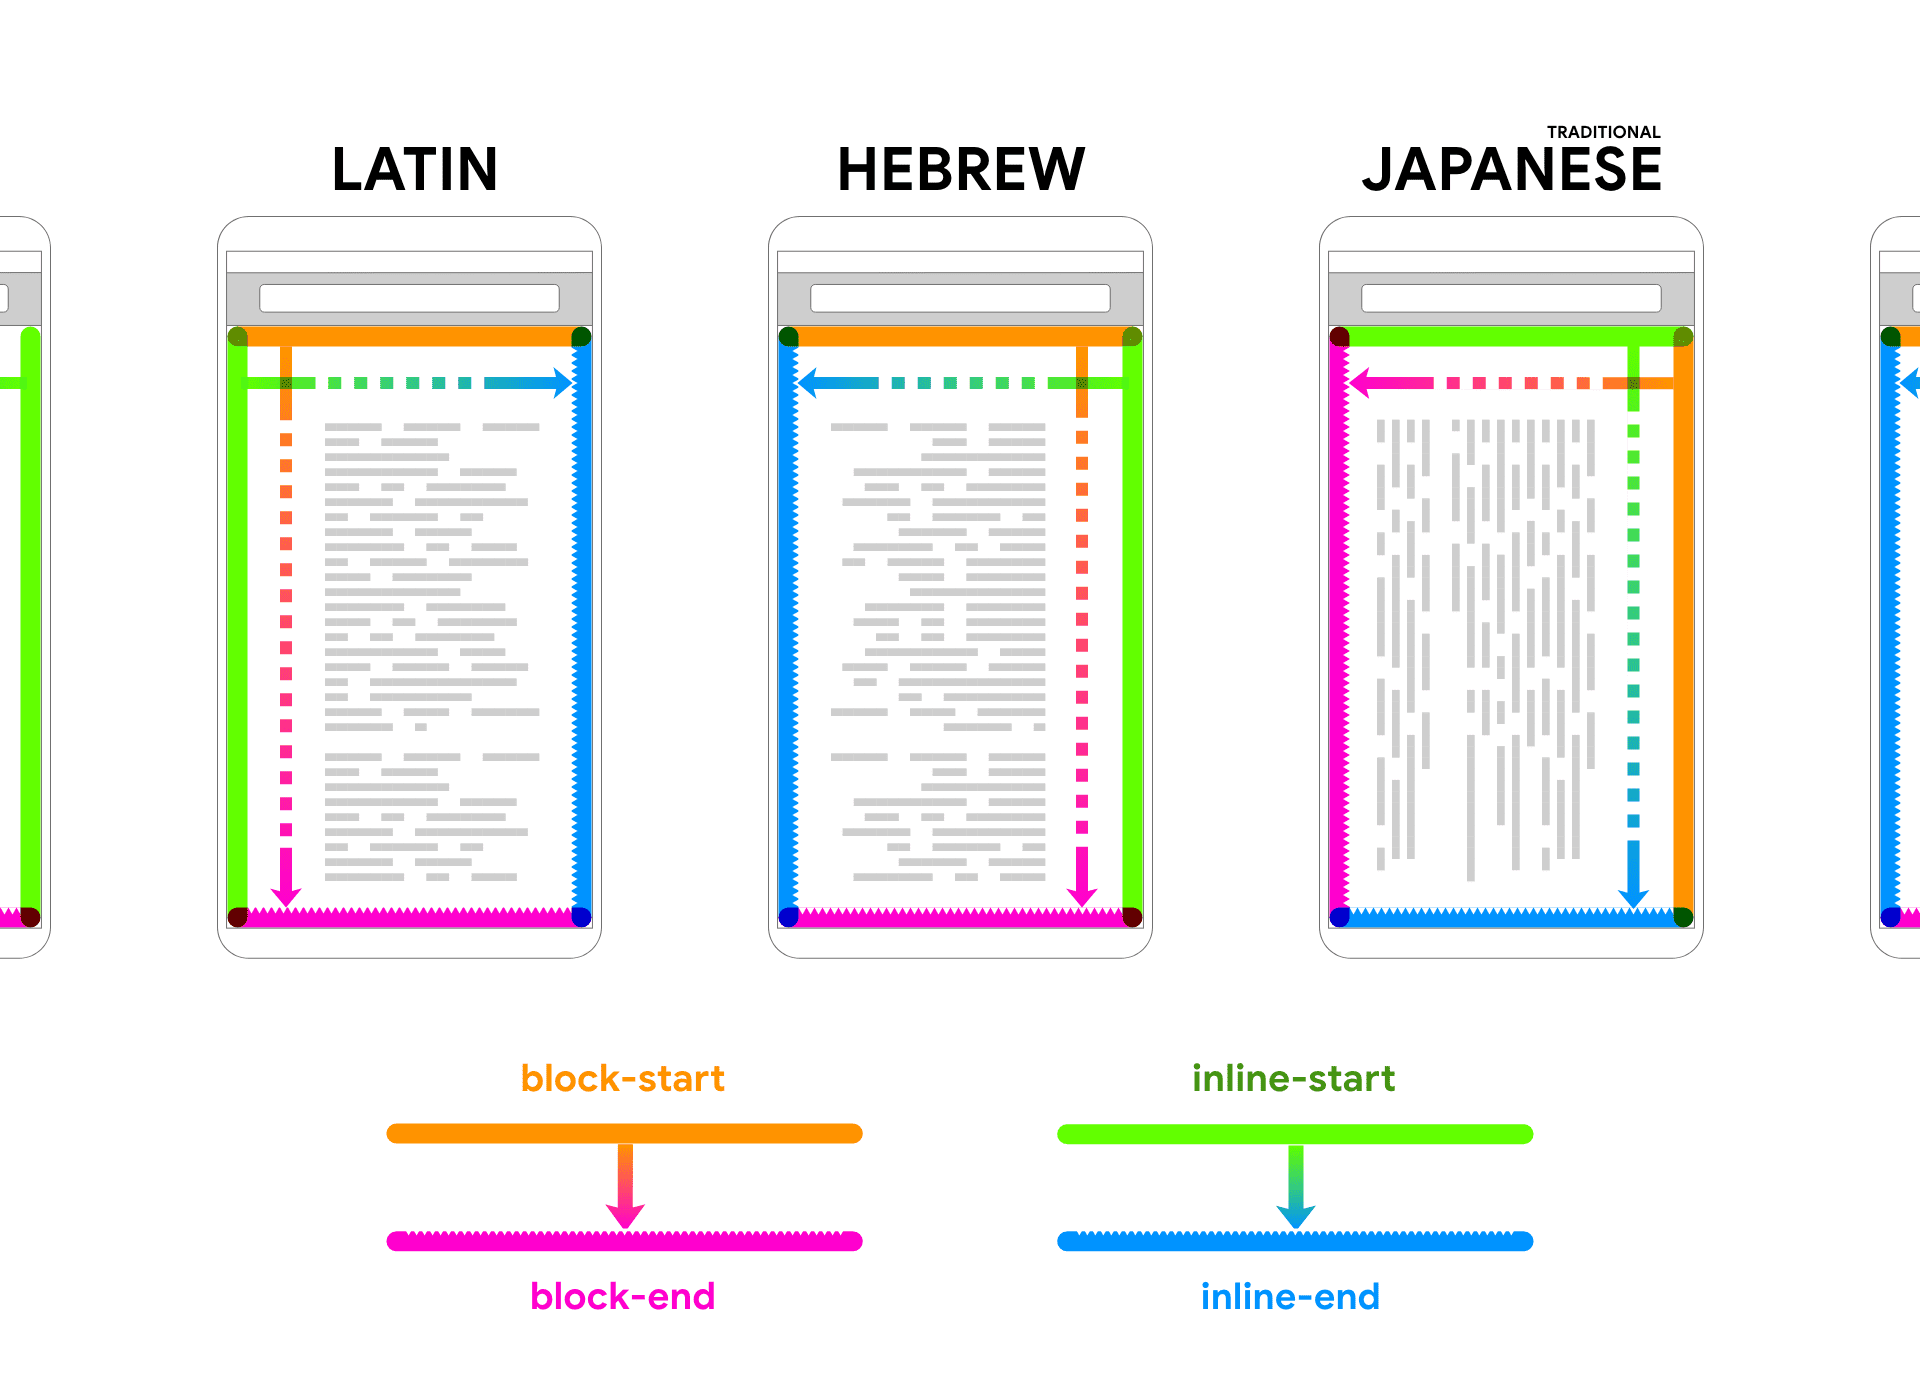 而裝置框內會顯示拉丁文、希伯來文和日文的預留位置文字。箭頭和顏色依循文字，有助於將區塊和內嵌的 2 個方向建立關聯。